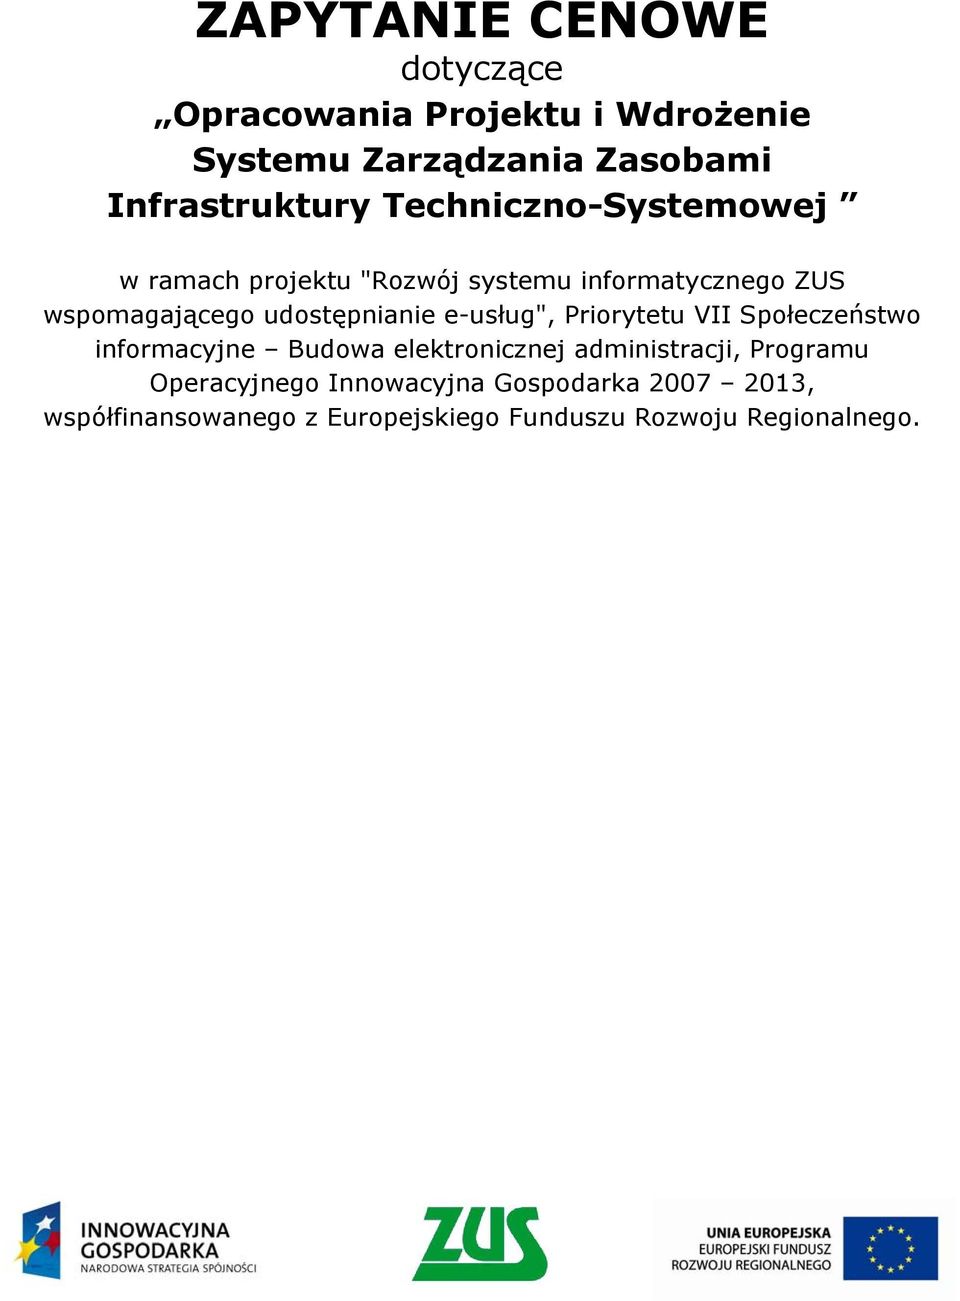 e-usług", Priorytetu VII Społeczeństwo informacyjne Budowa elektronicznej administracji, Programu